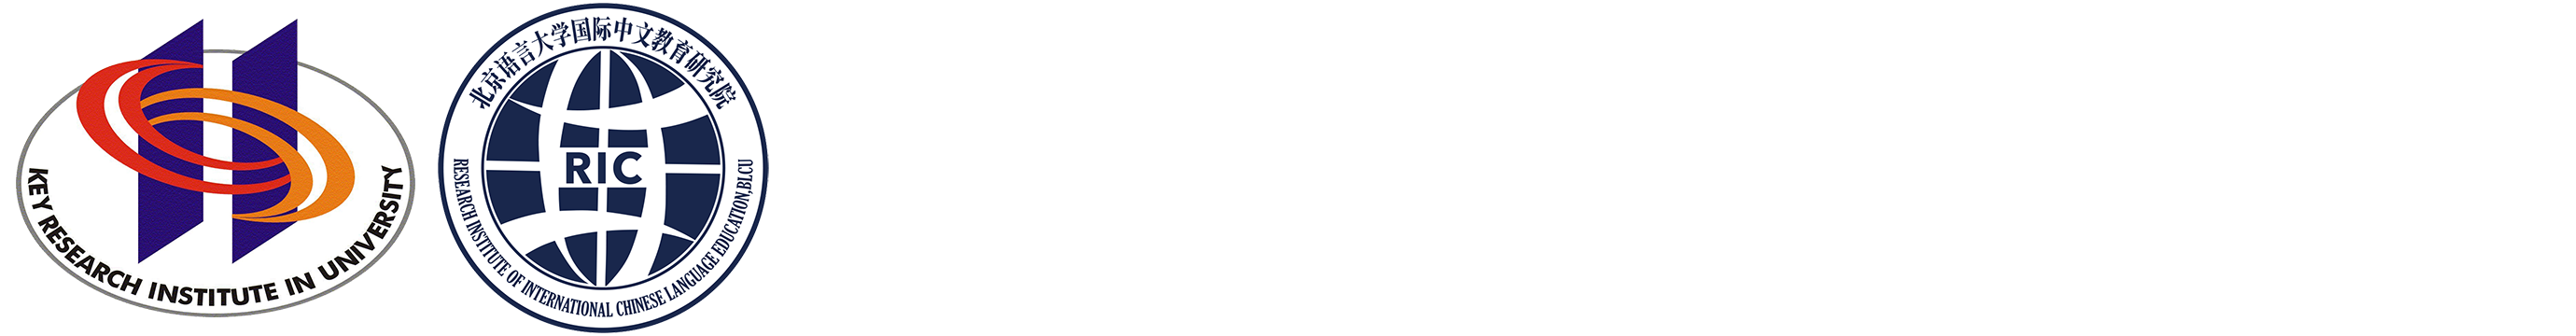 国际中文教育研究院